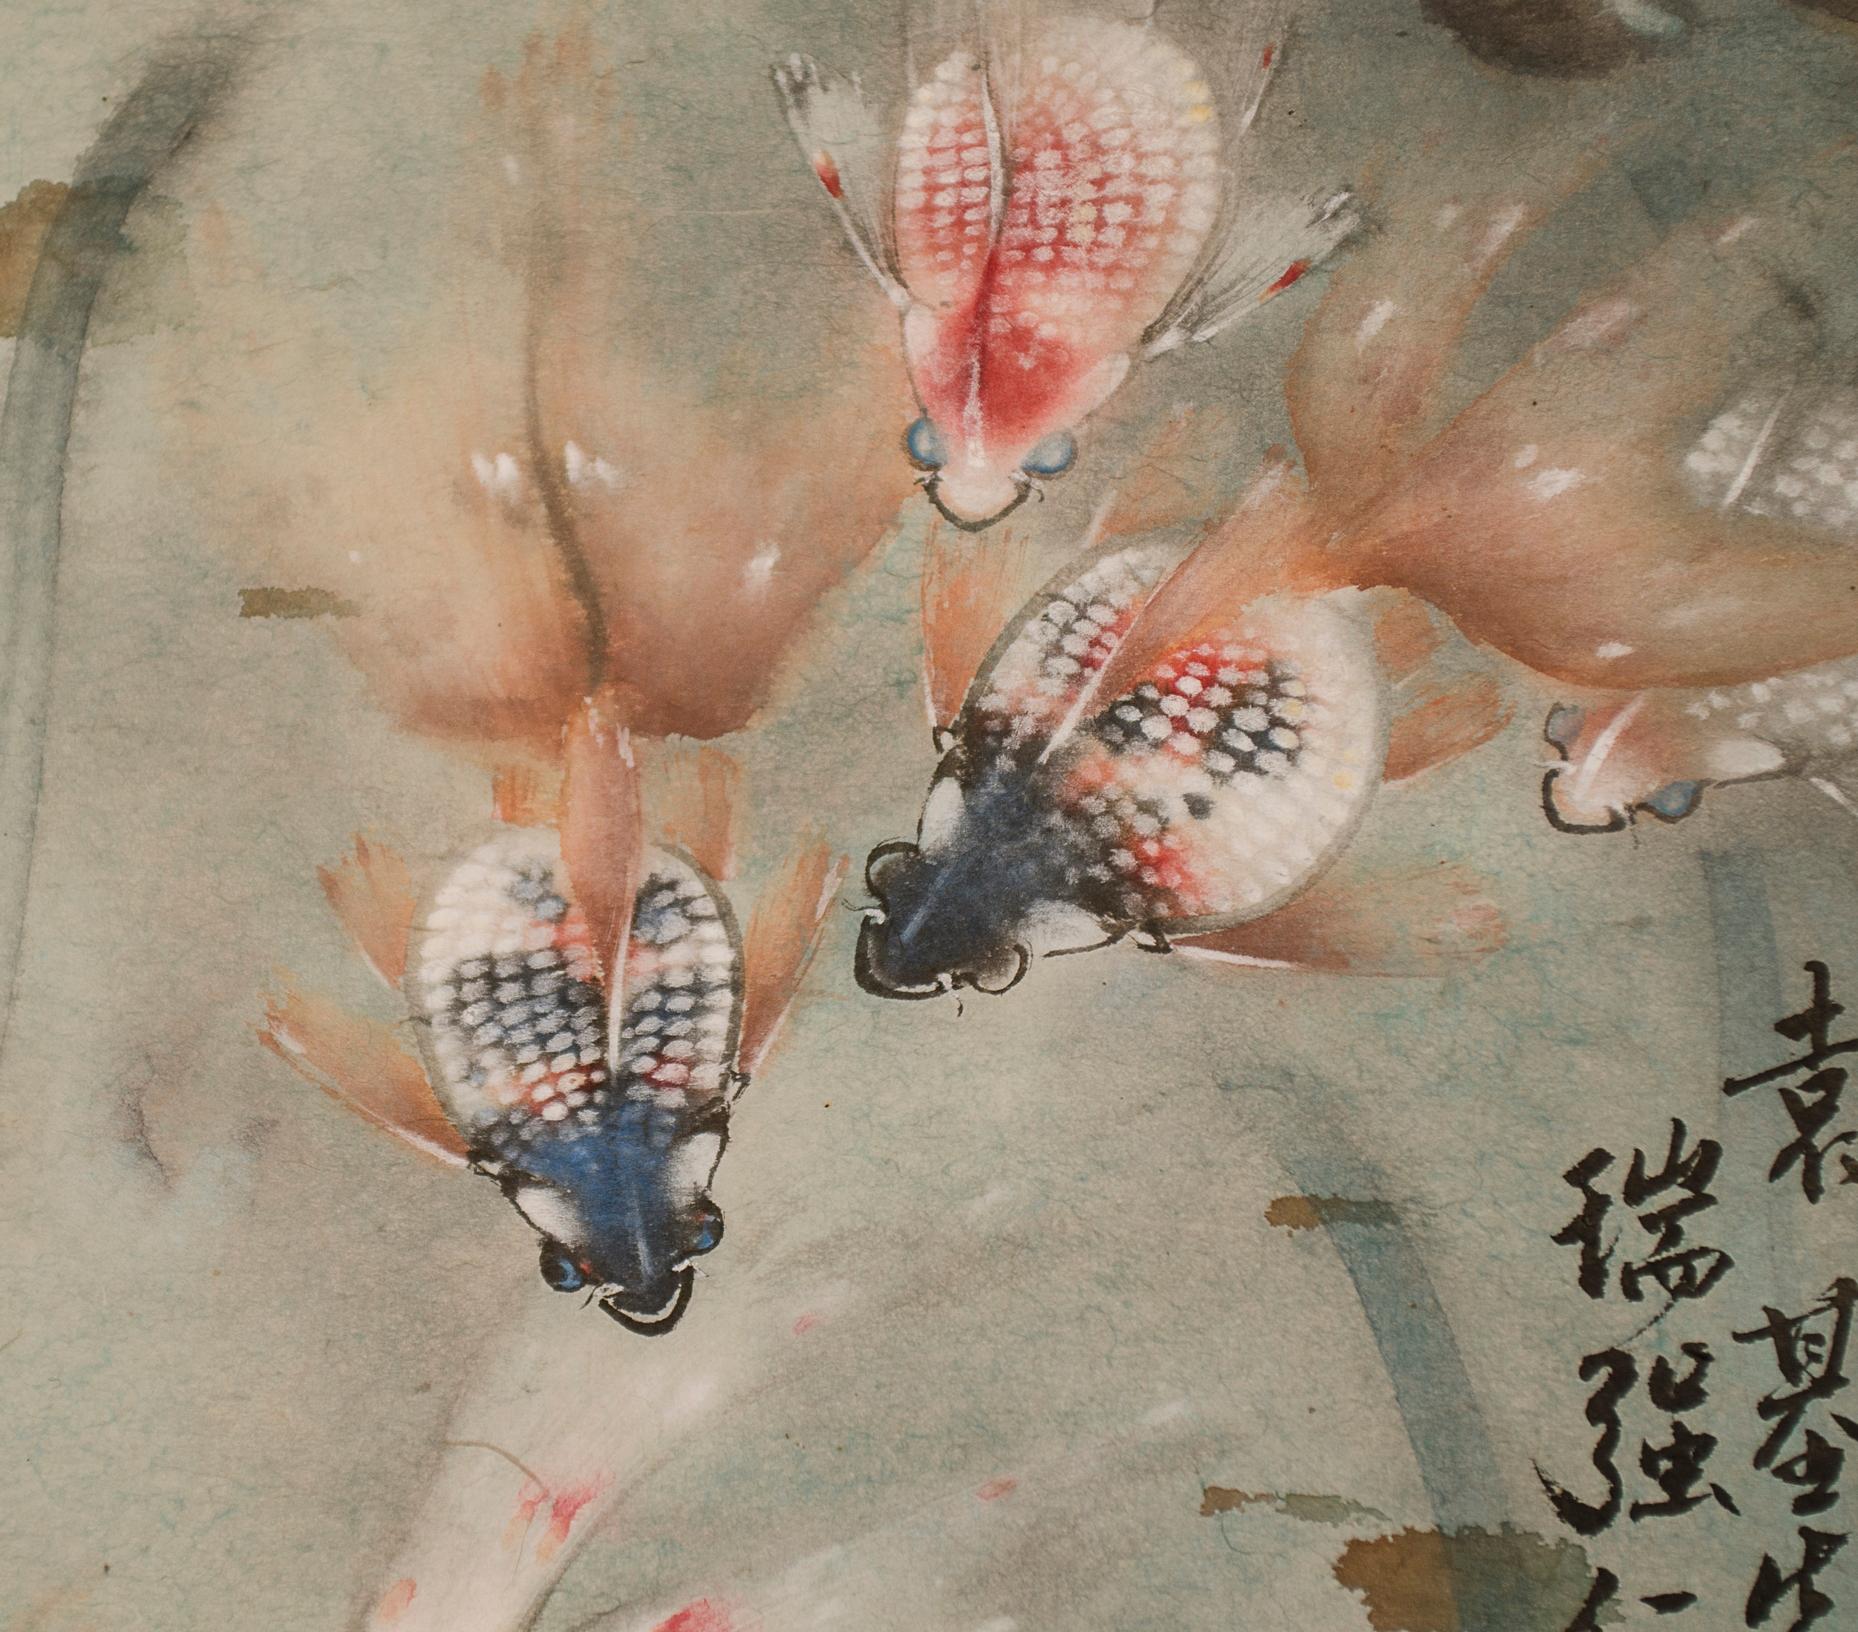 Chinesische Aquarellmalerei auf Papier
Gemälde aus dem 20. Jahrhundert mit kleinem feuchten Fleck.